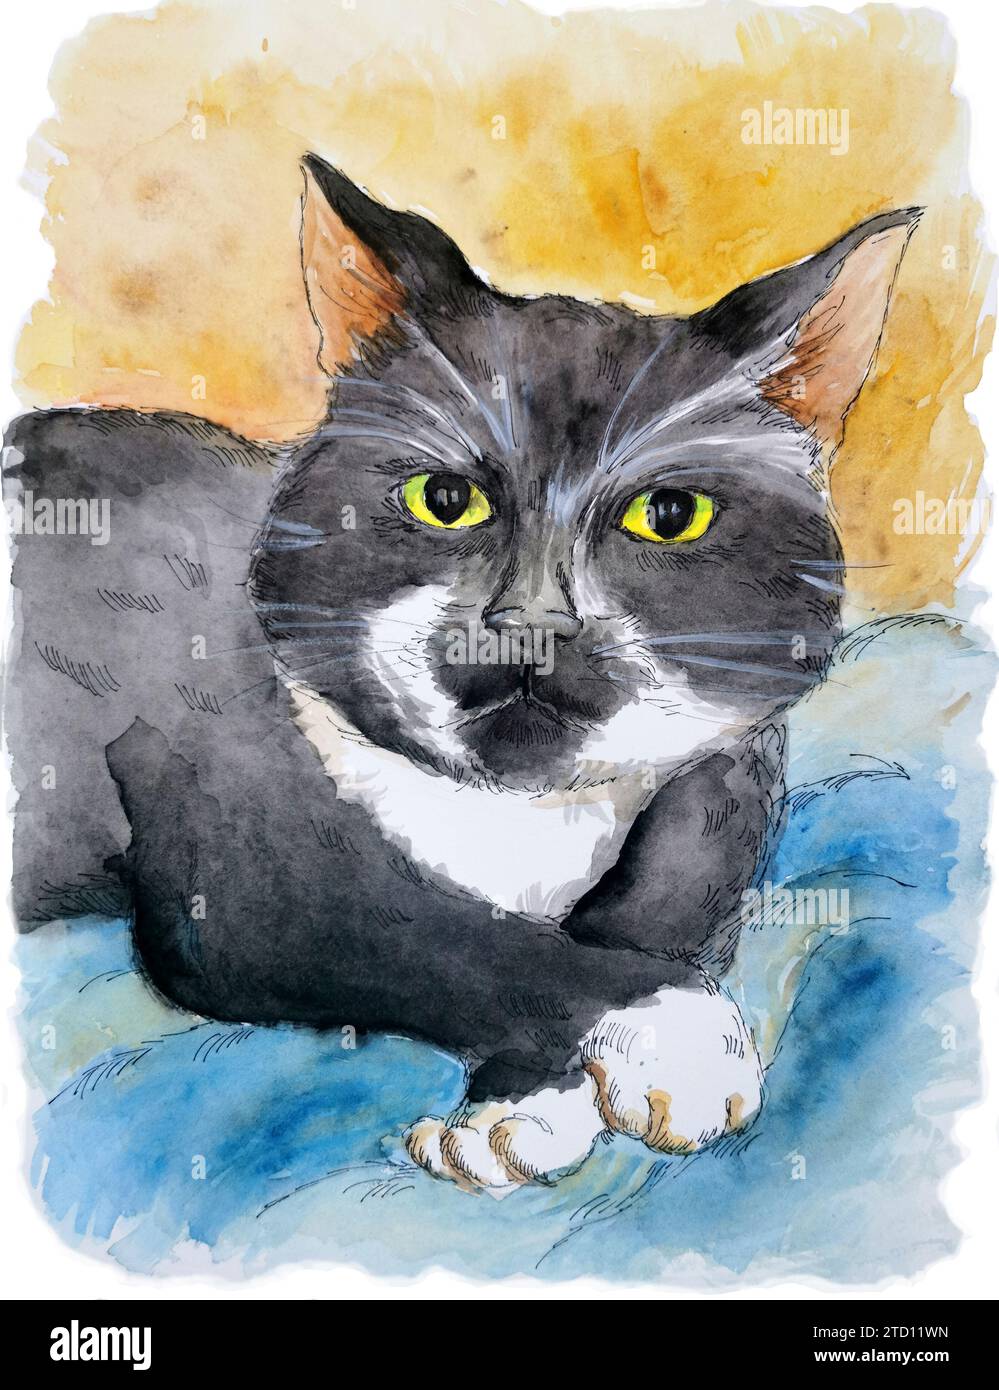 Portrait d'adorable chat noir et blanc smoking. Dessin à l'aquarelle. Concept d'animal de compagnie. Banque D'Images